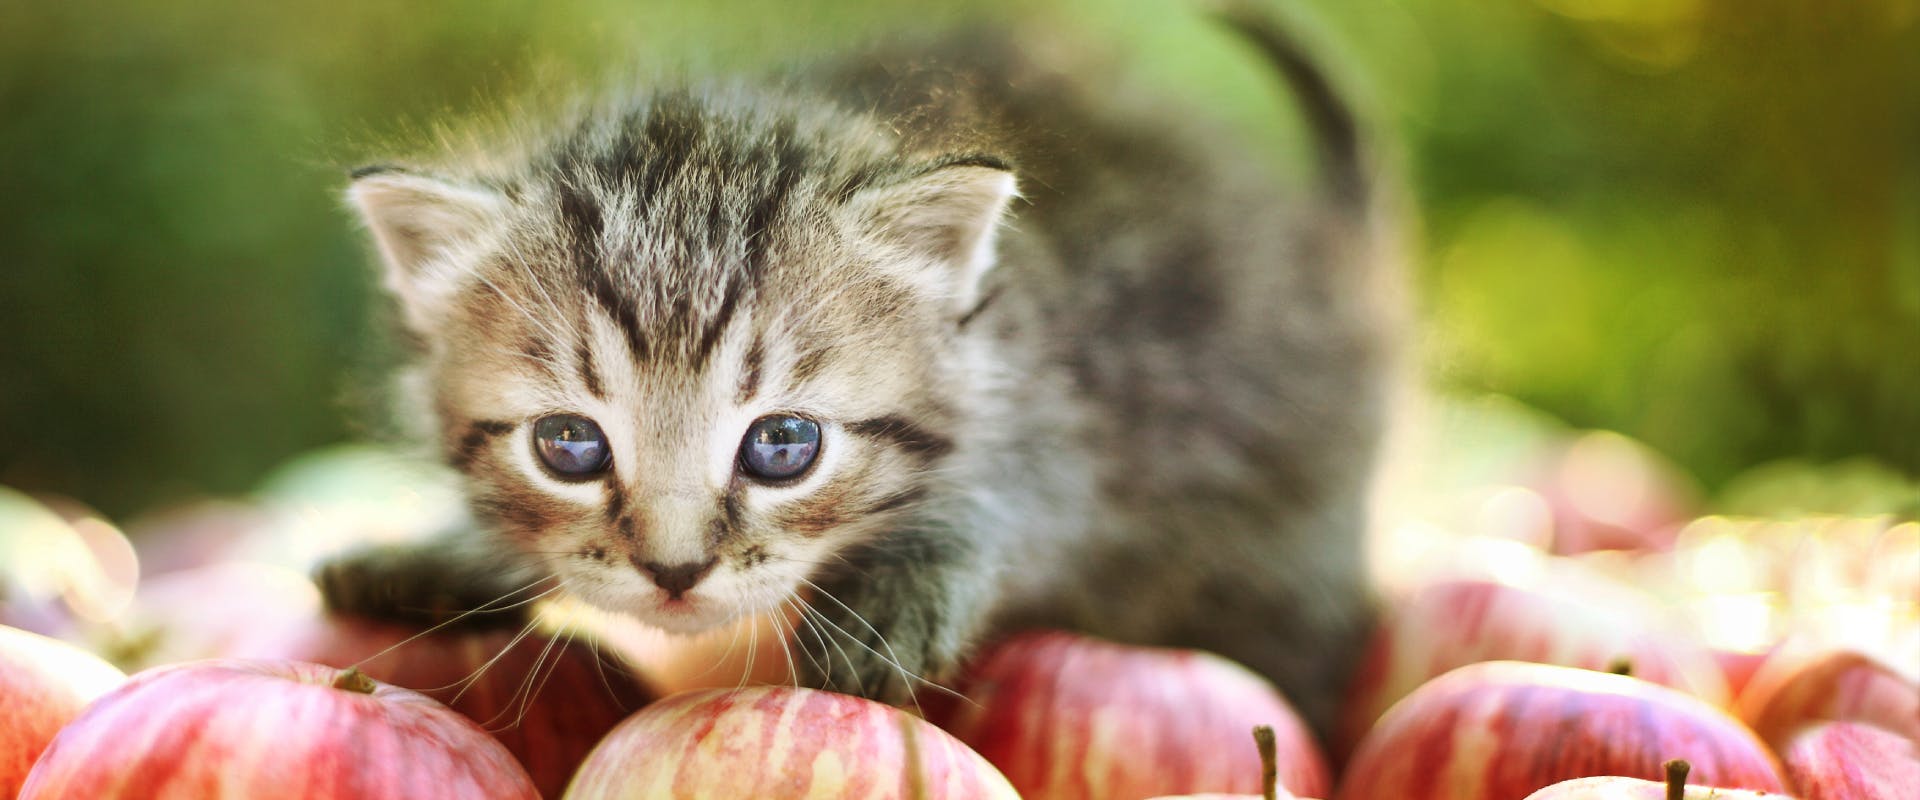 tabby kitten sat on a pile of apples